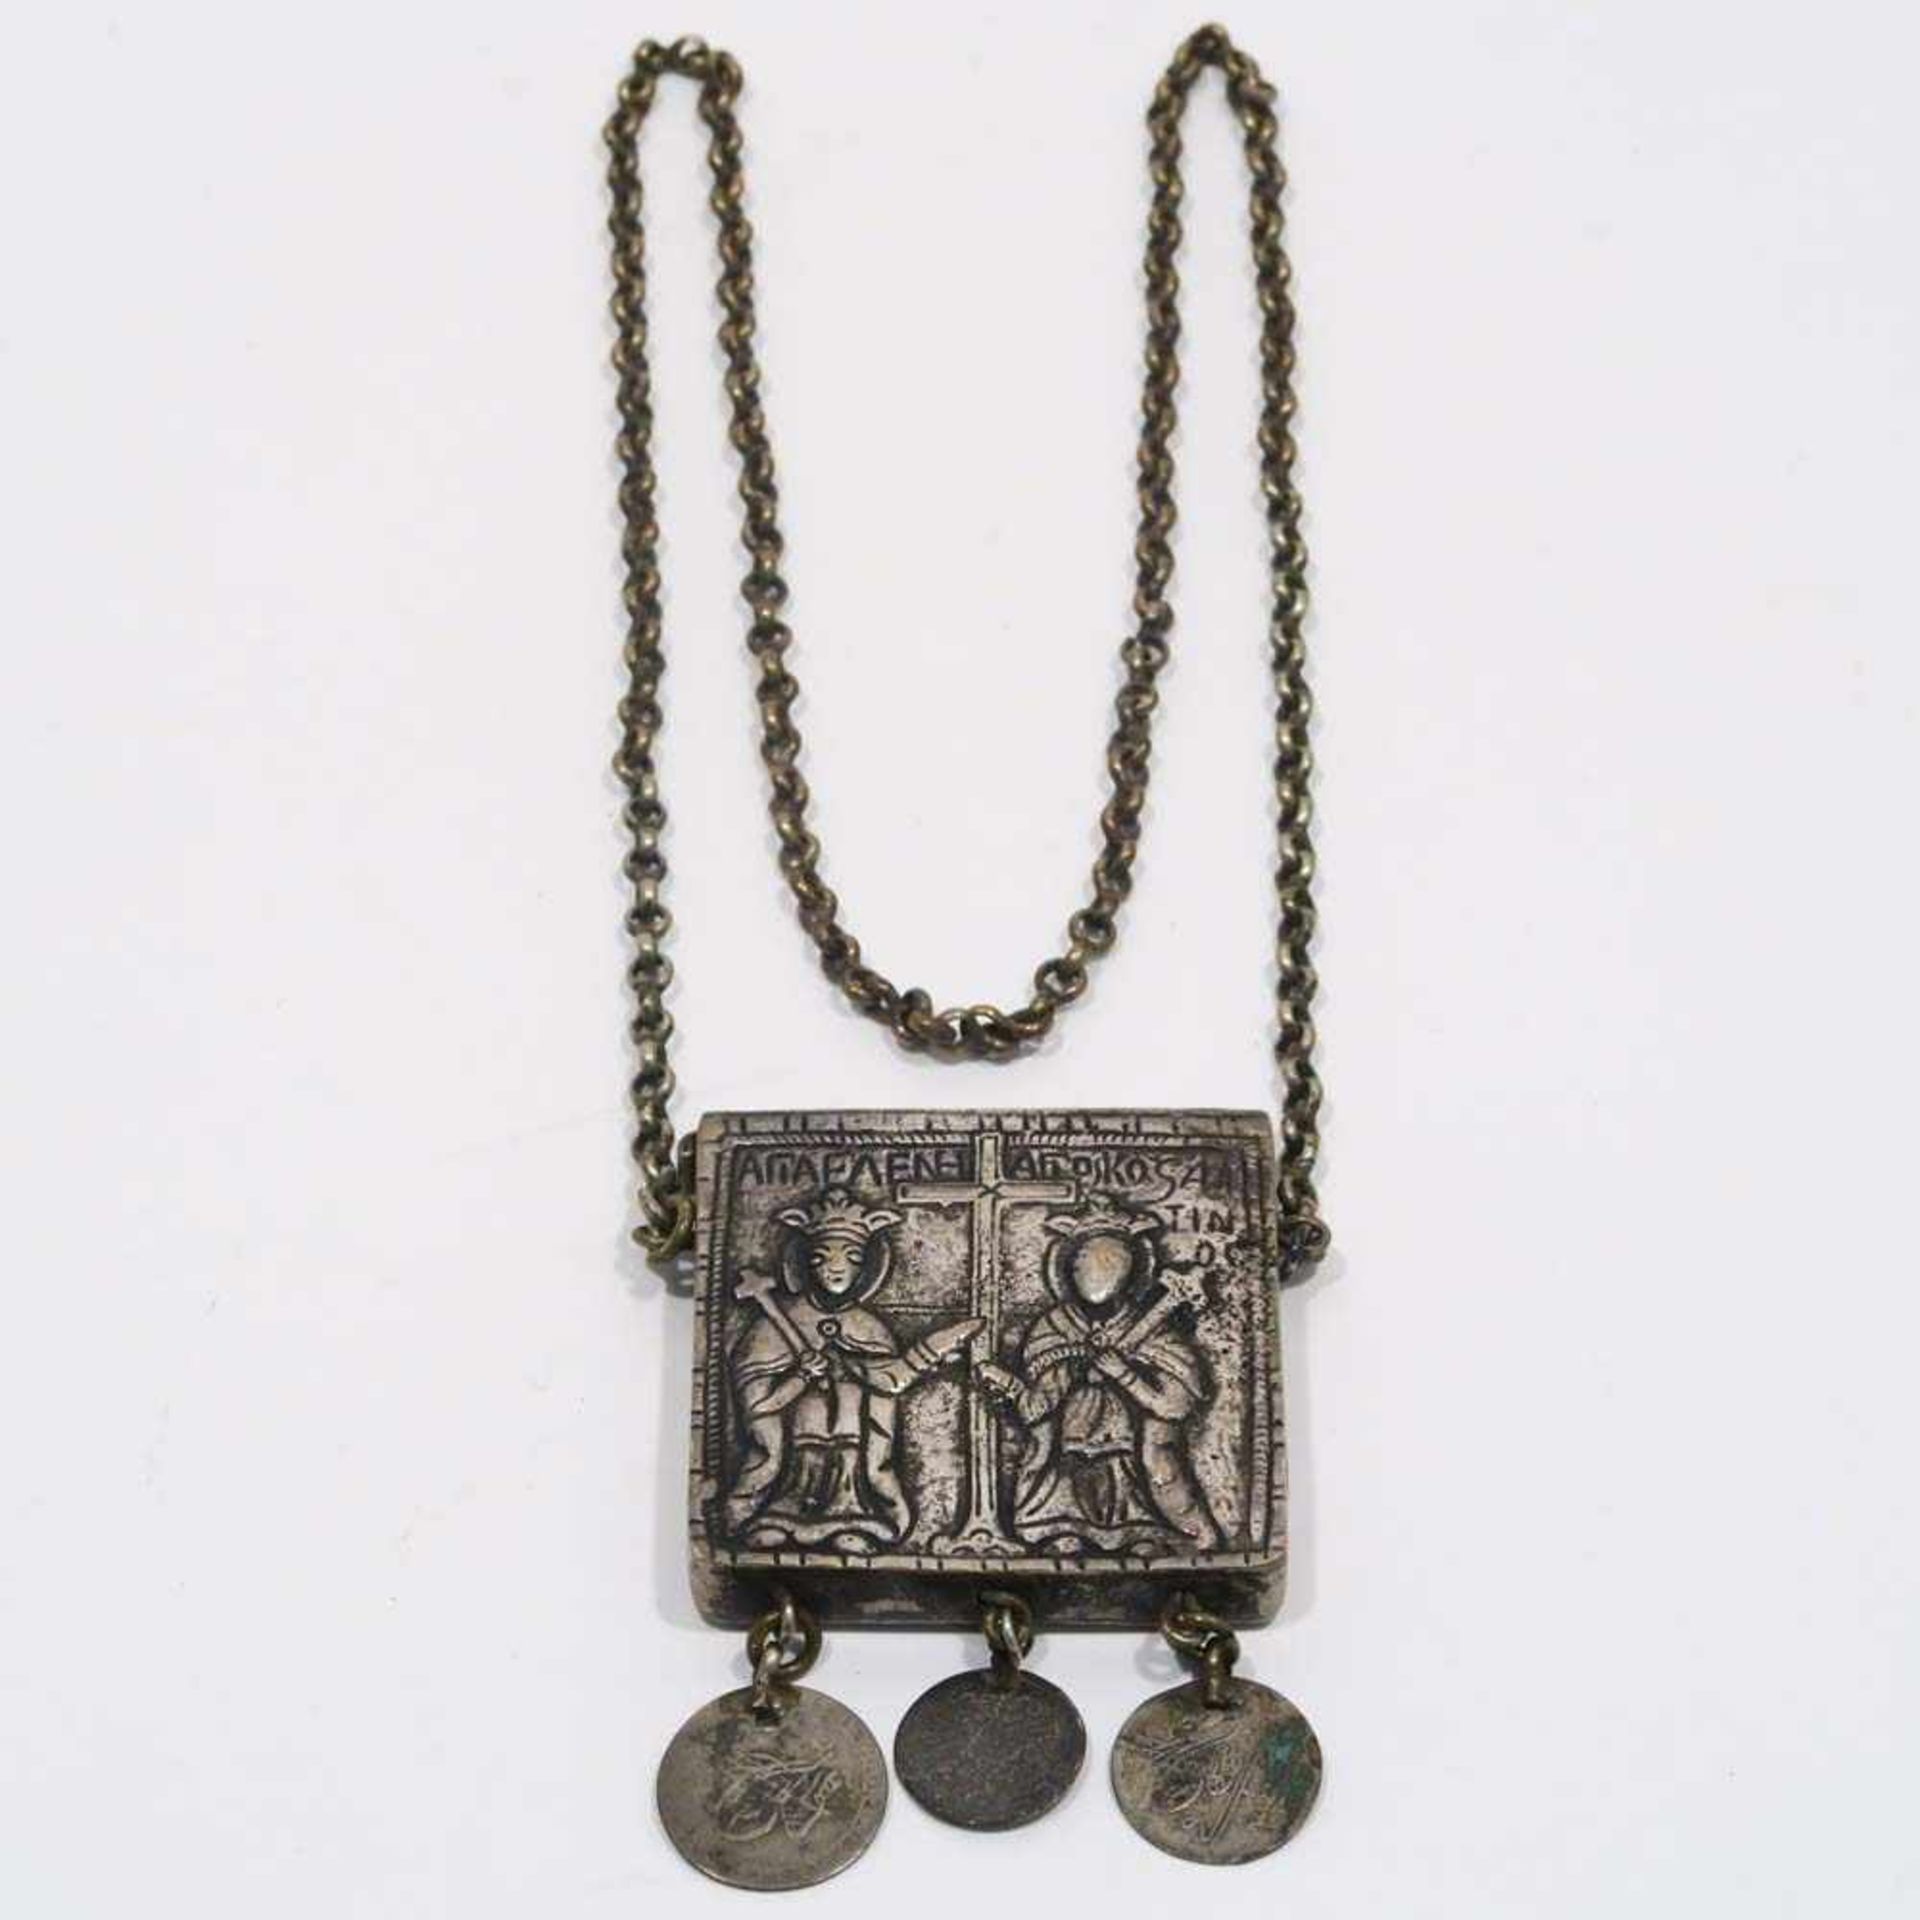 Amulettanhänger mit KetteMetall. Quadratischer Anhänger mit reliefierten, griechisch bezeichneten